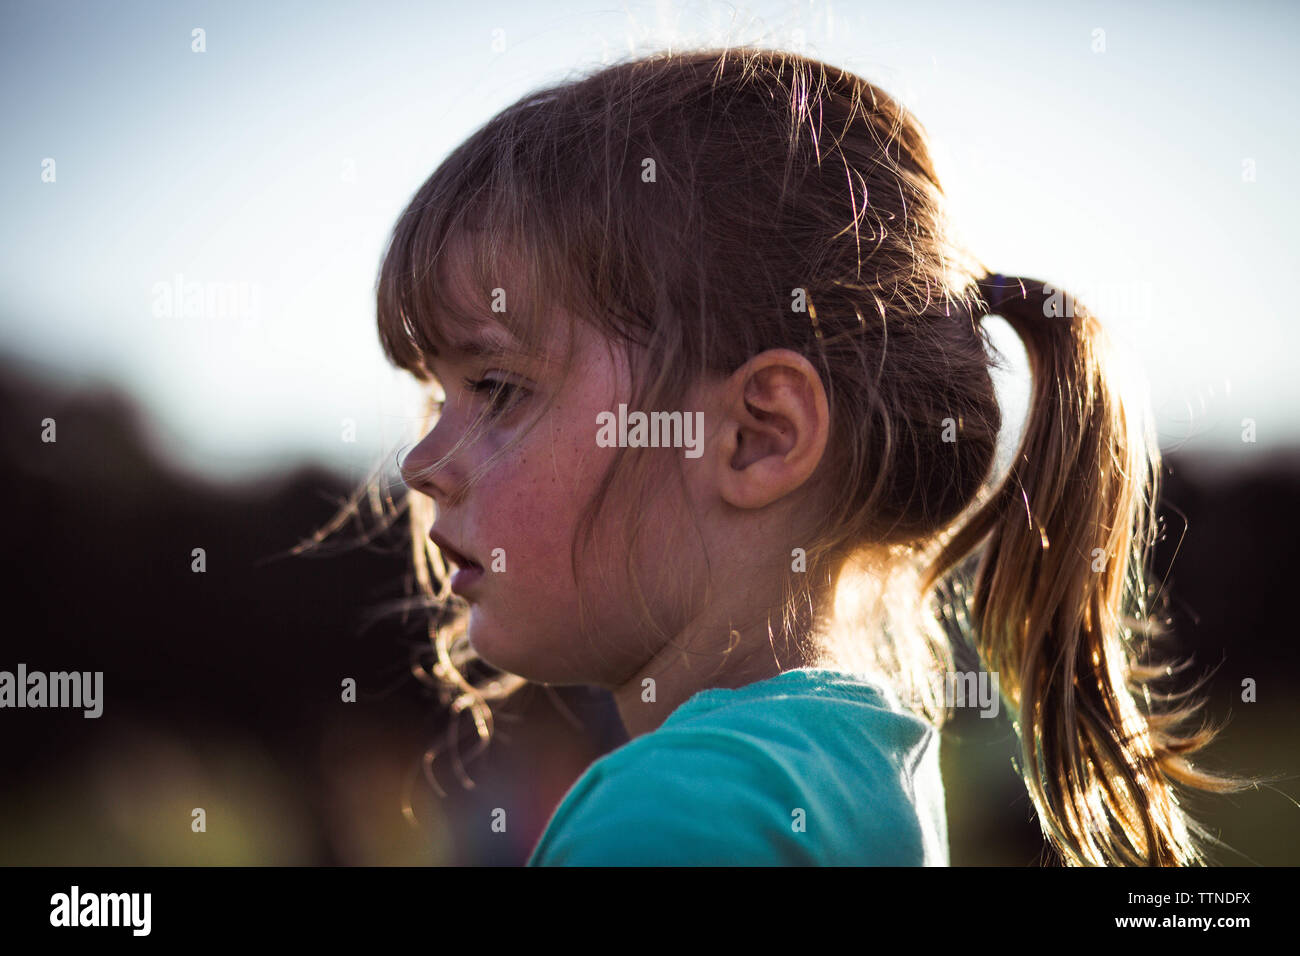 Profil von 5 Jahre alten Mädchen mit Pferdeschwanz und Sommersprossen und Sonnenlicht Stockfoto